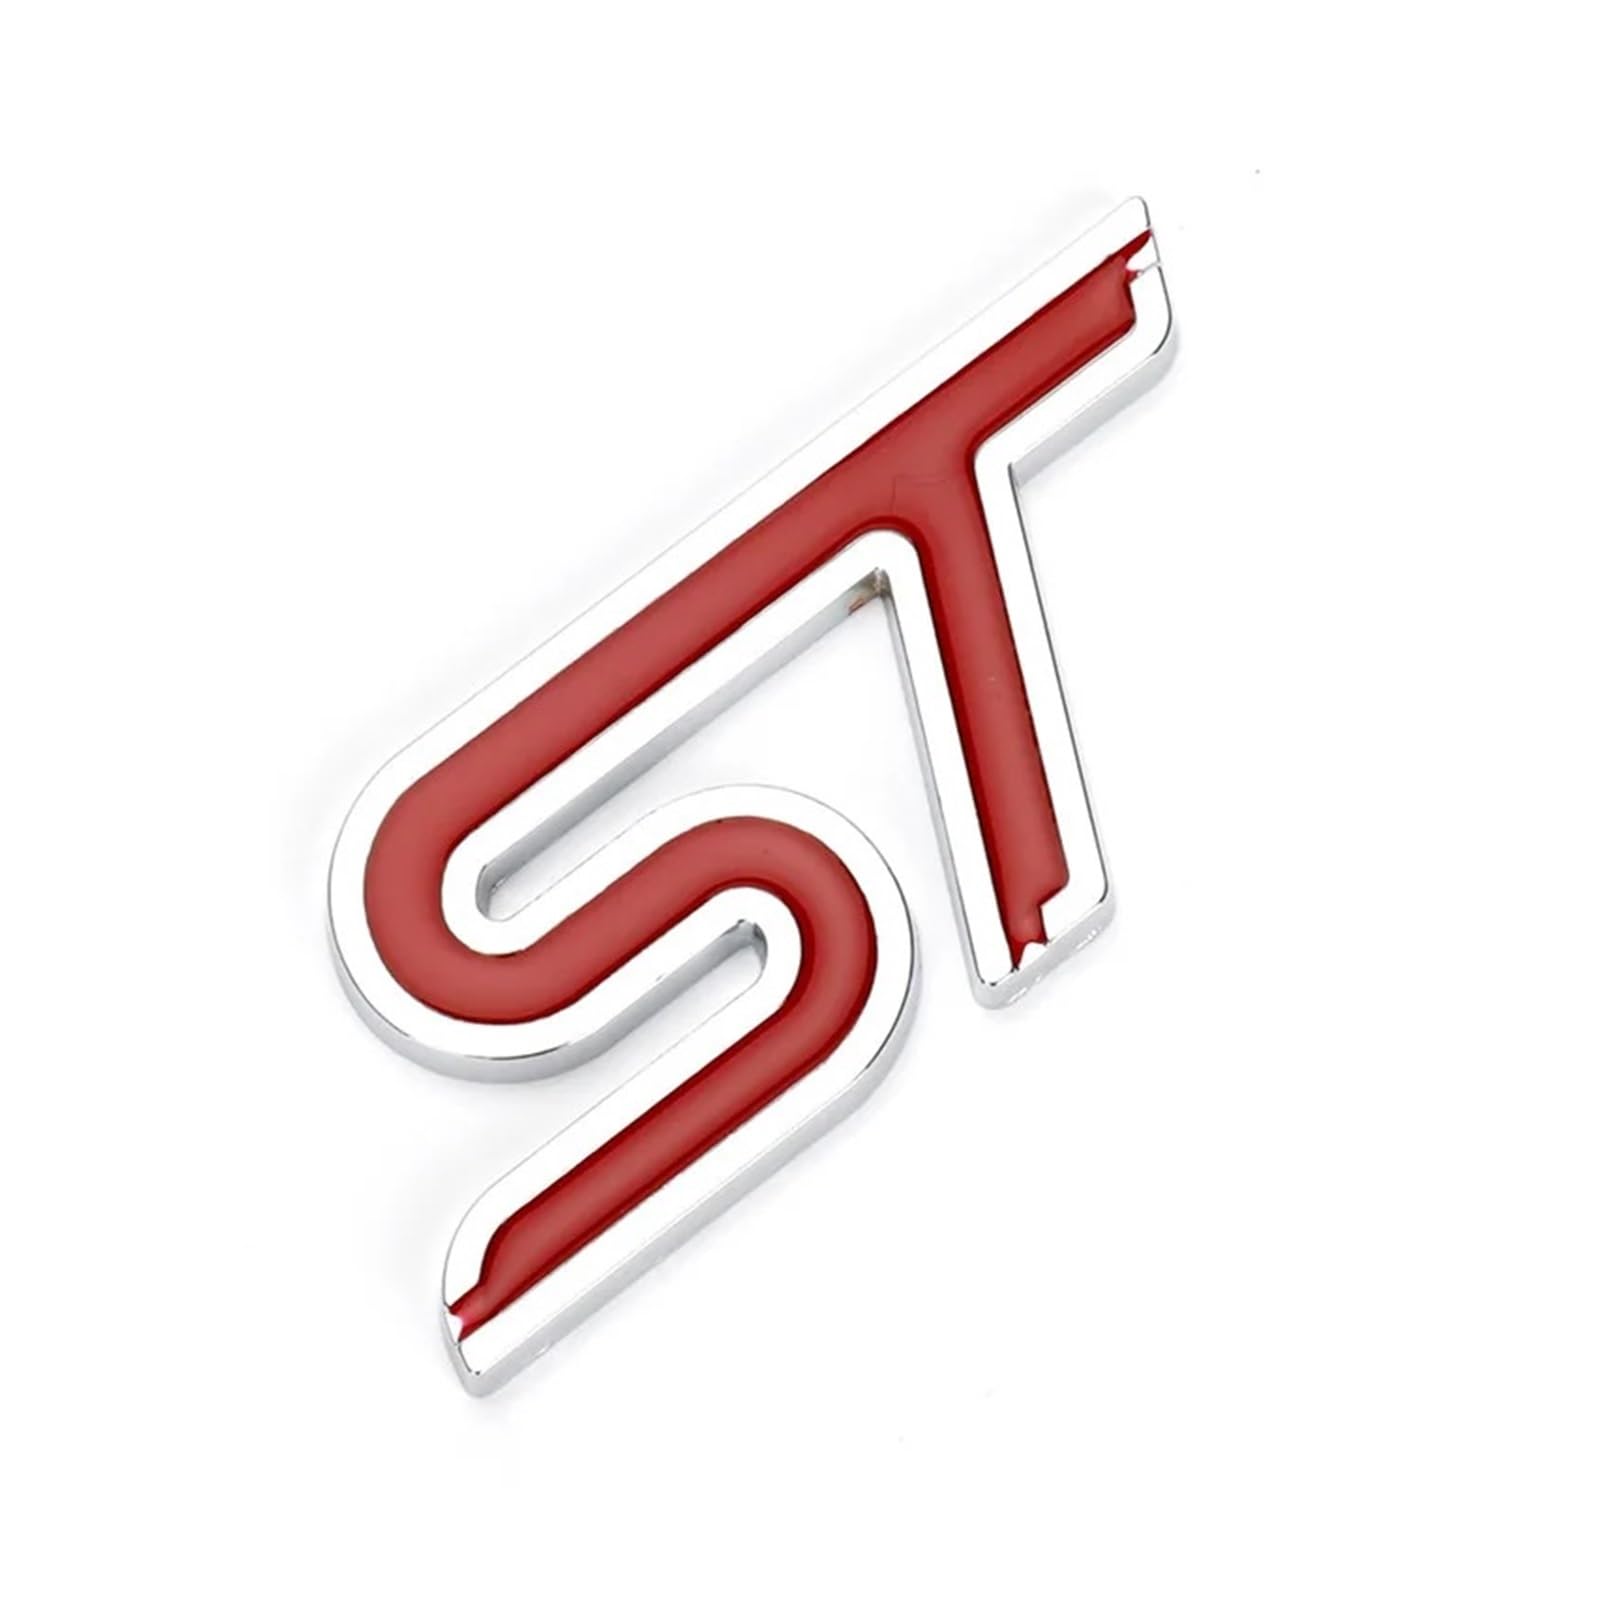 AQXYWQOL 3D Metall ST Logo Hinten Stamm Emblem Abzeichen Auto Aufkleber Aufkleber Kompatibel mit FOCUS RS FIESTA MONDEO Auto Styling Zubehör Farbe ist konstant, verblasst nicht und beschädigt(Red) von AQXYWQOL